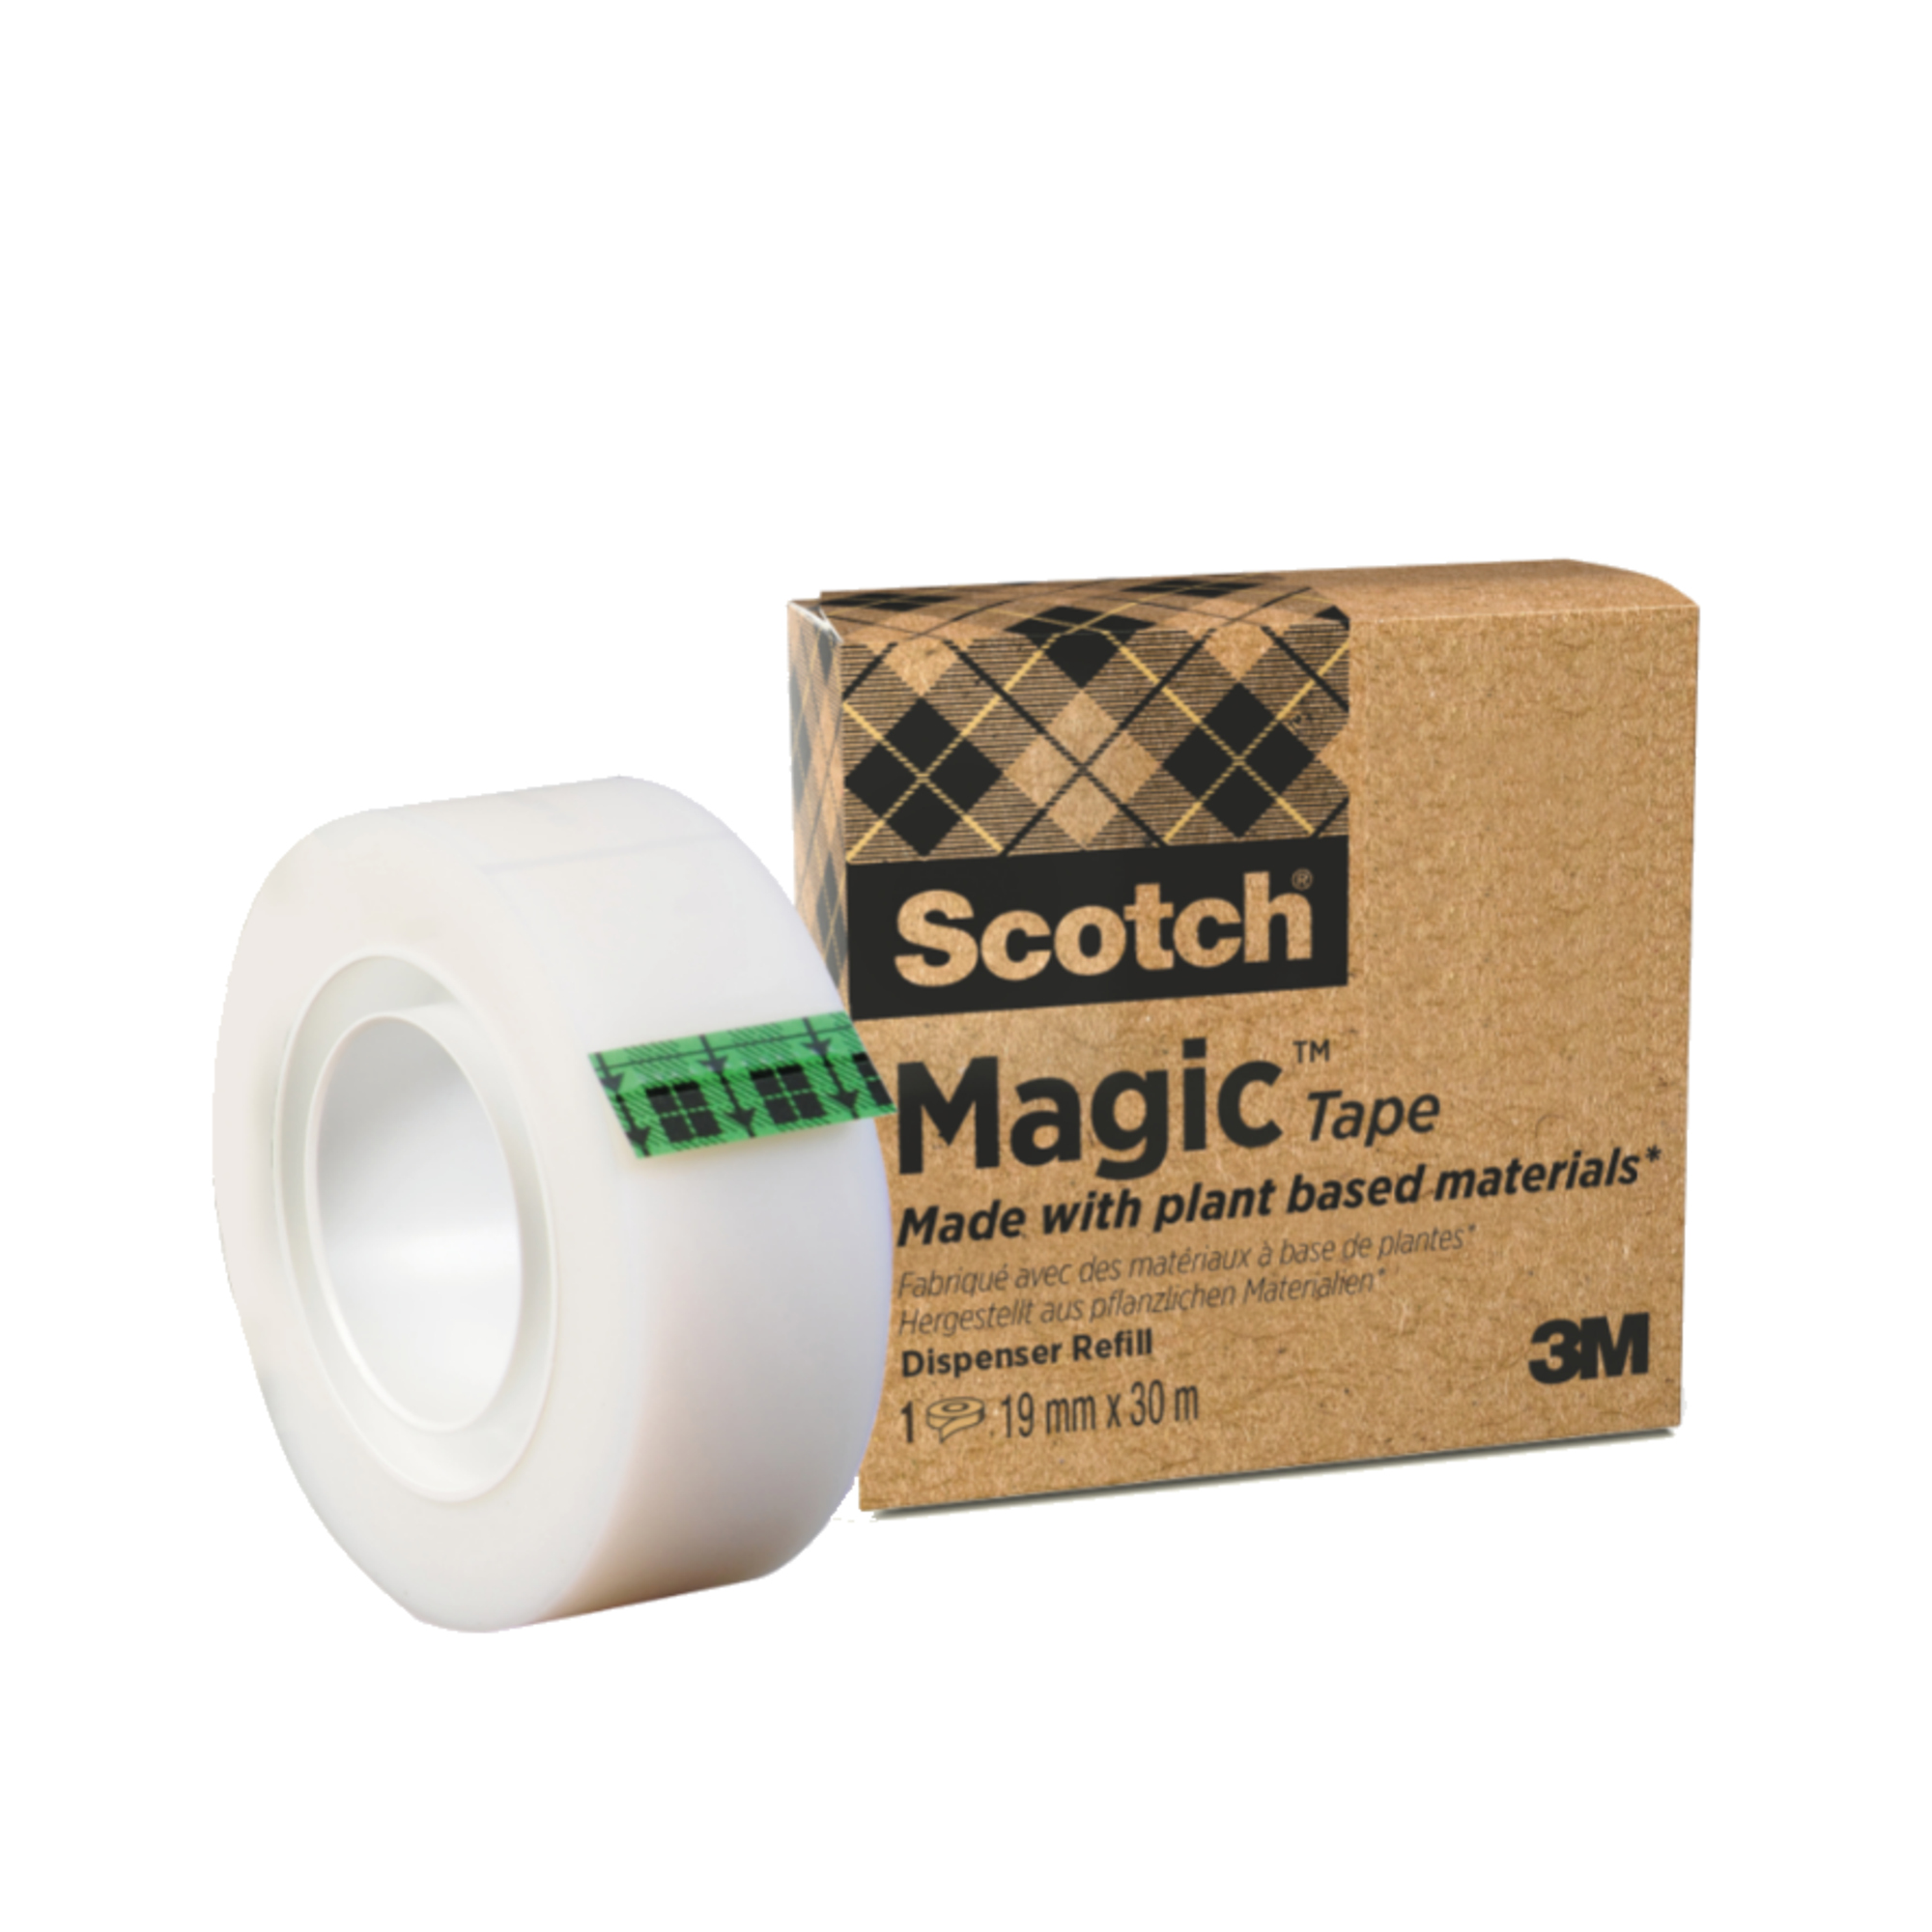 Scotch® Klebeband Magic™ A greener choice 19mmx33m beschriftbar unsichtbar